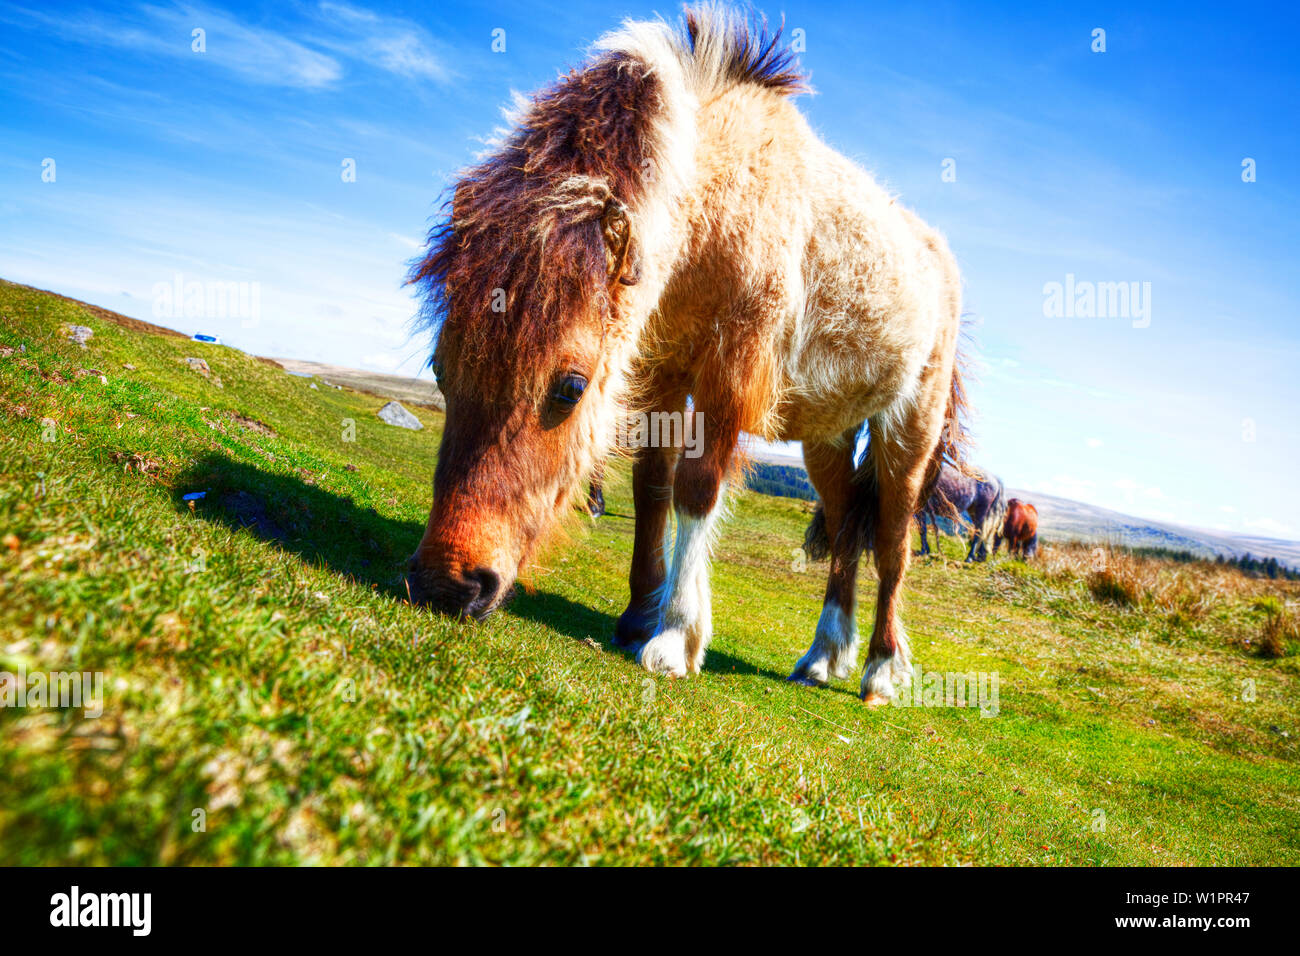 Poneys Dartmoor, poney Dartmoor, Equus ferus caballus, Dartmoor, chevaux, poneys, poney Dartmoor Dartmoor, dans le Devon, cheval, chevaux, pâturage, Devon Dartmoor Banque D'Images